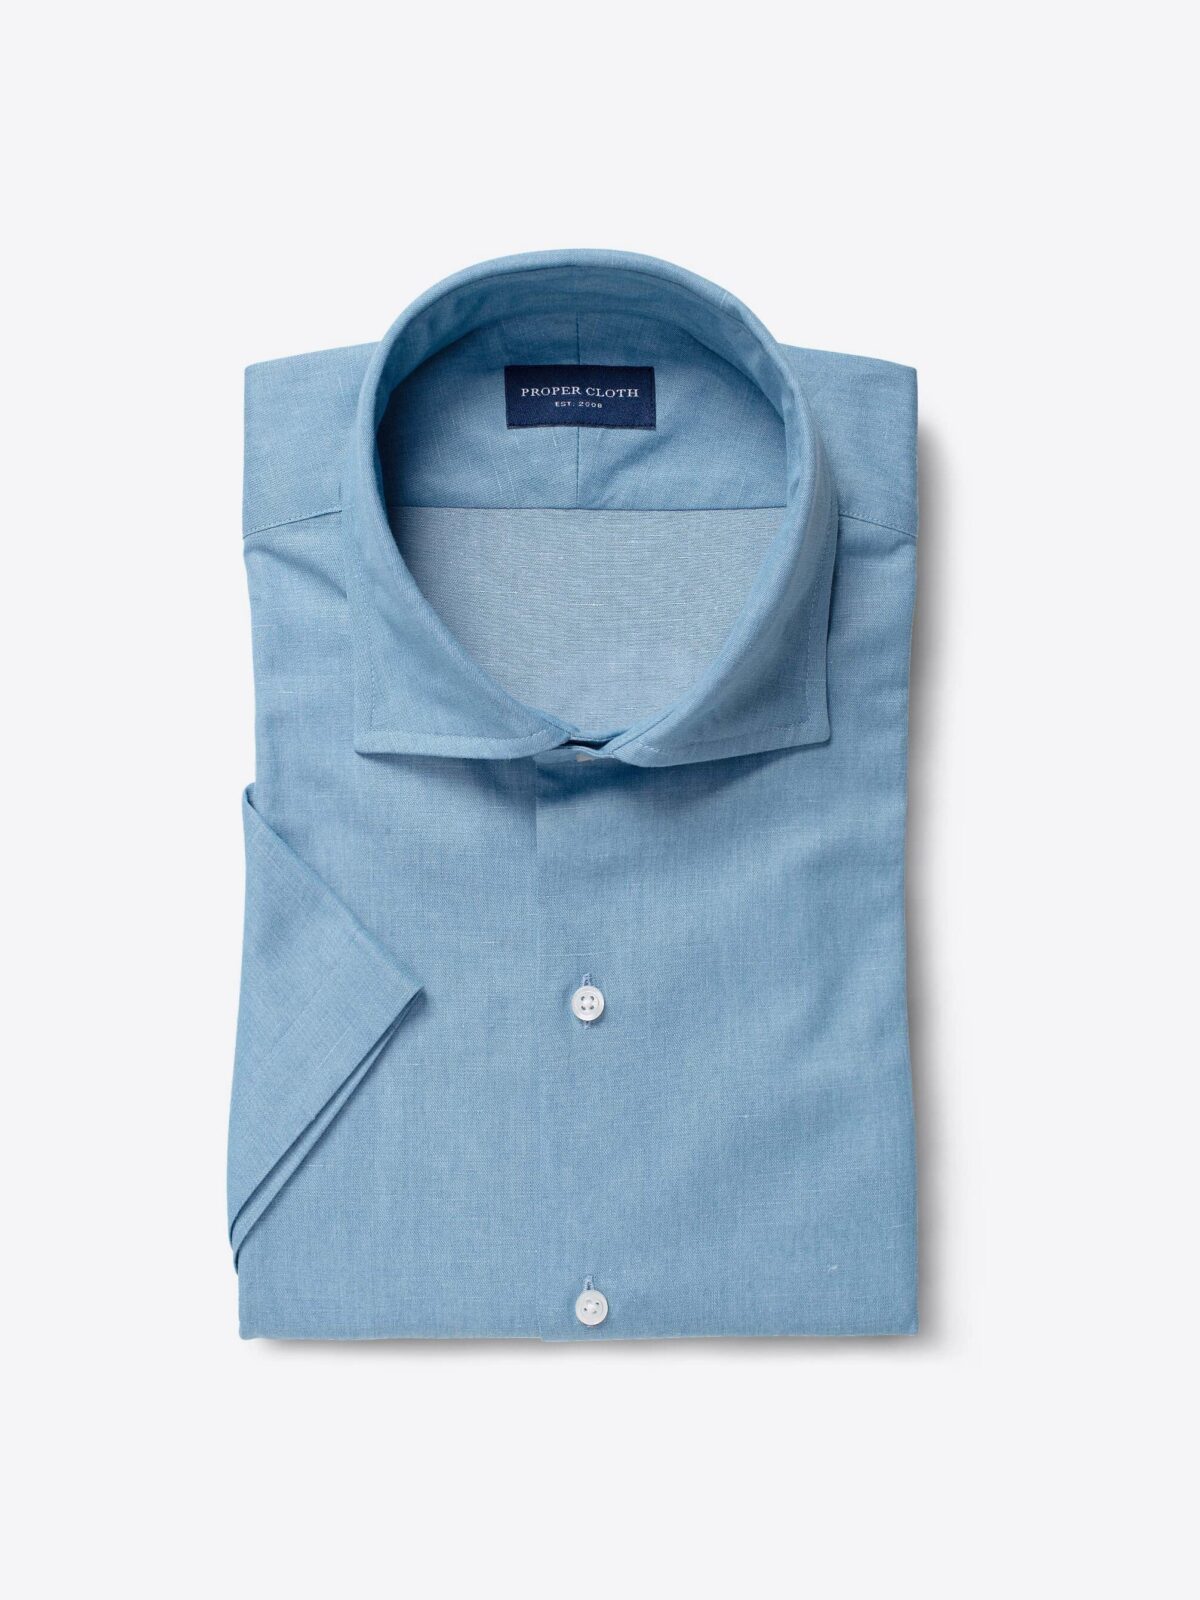 Monti Light Blue Cotton Linen Denim Fitted Dress Shirt Shirt by Proper Cloth